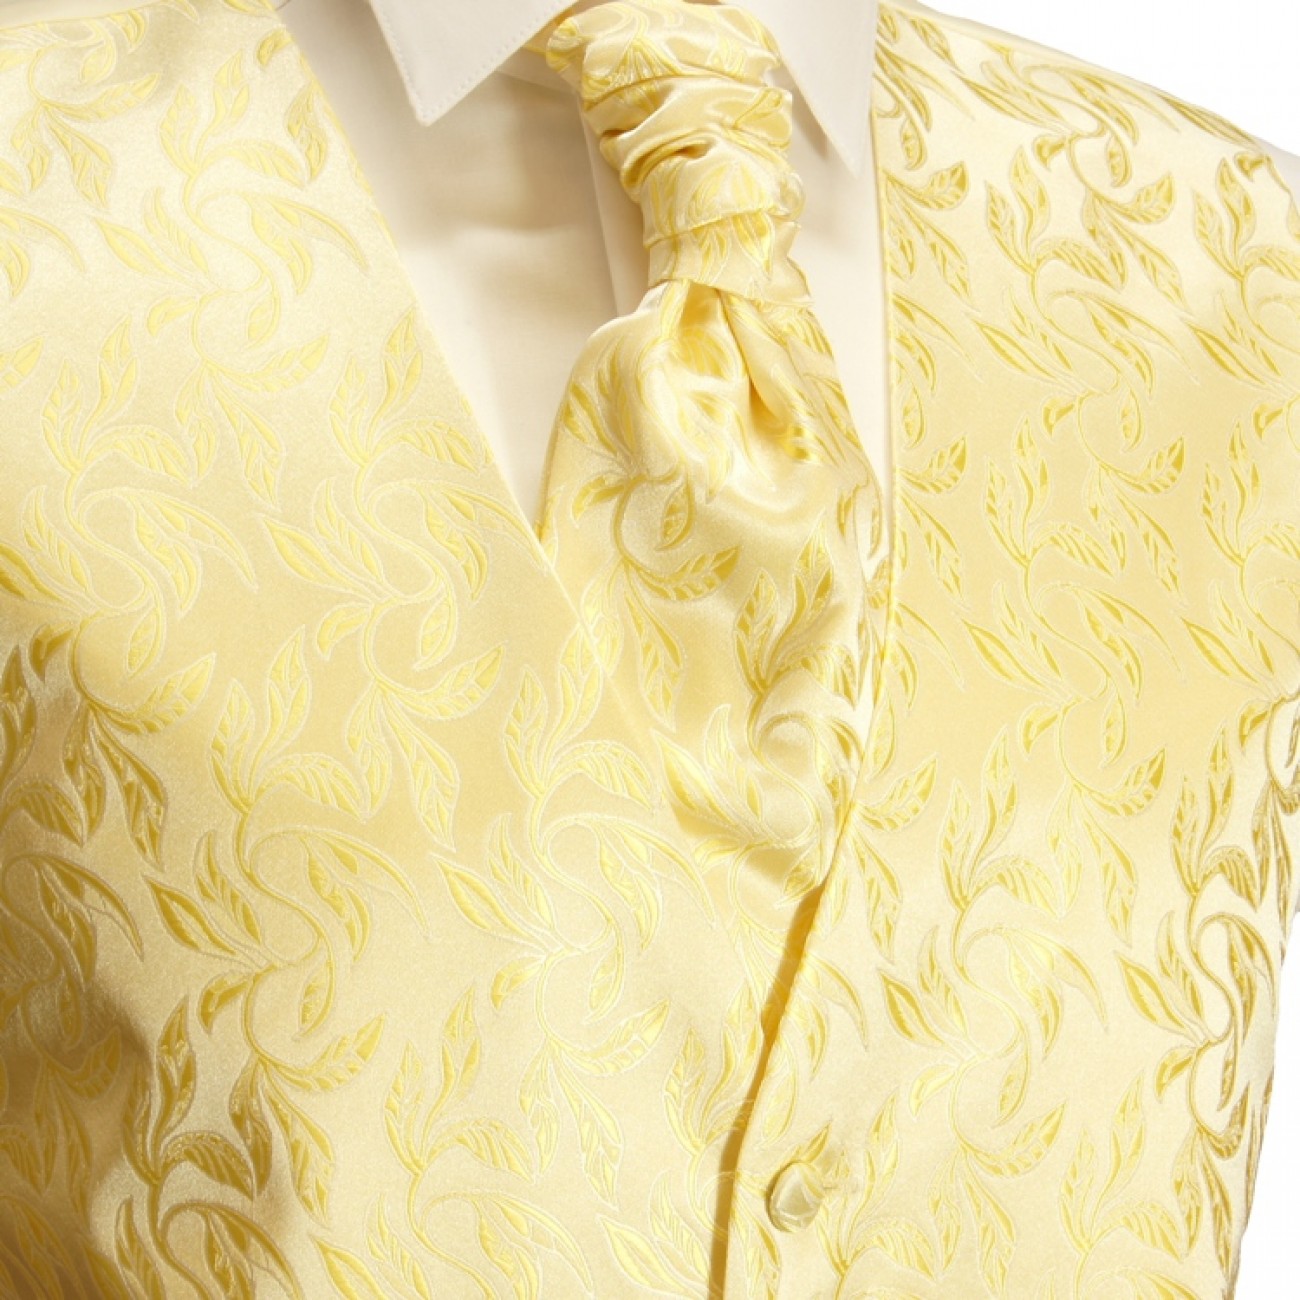 Creme gold Hochzeitsweste mit Plastron Krawatte Einstecktuch und Manschettenknöpfen v49p